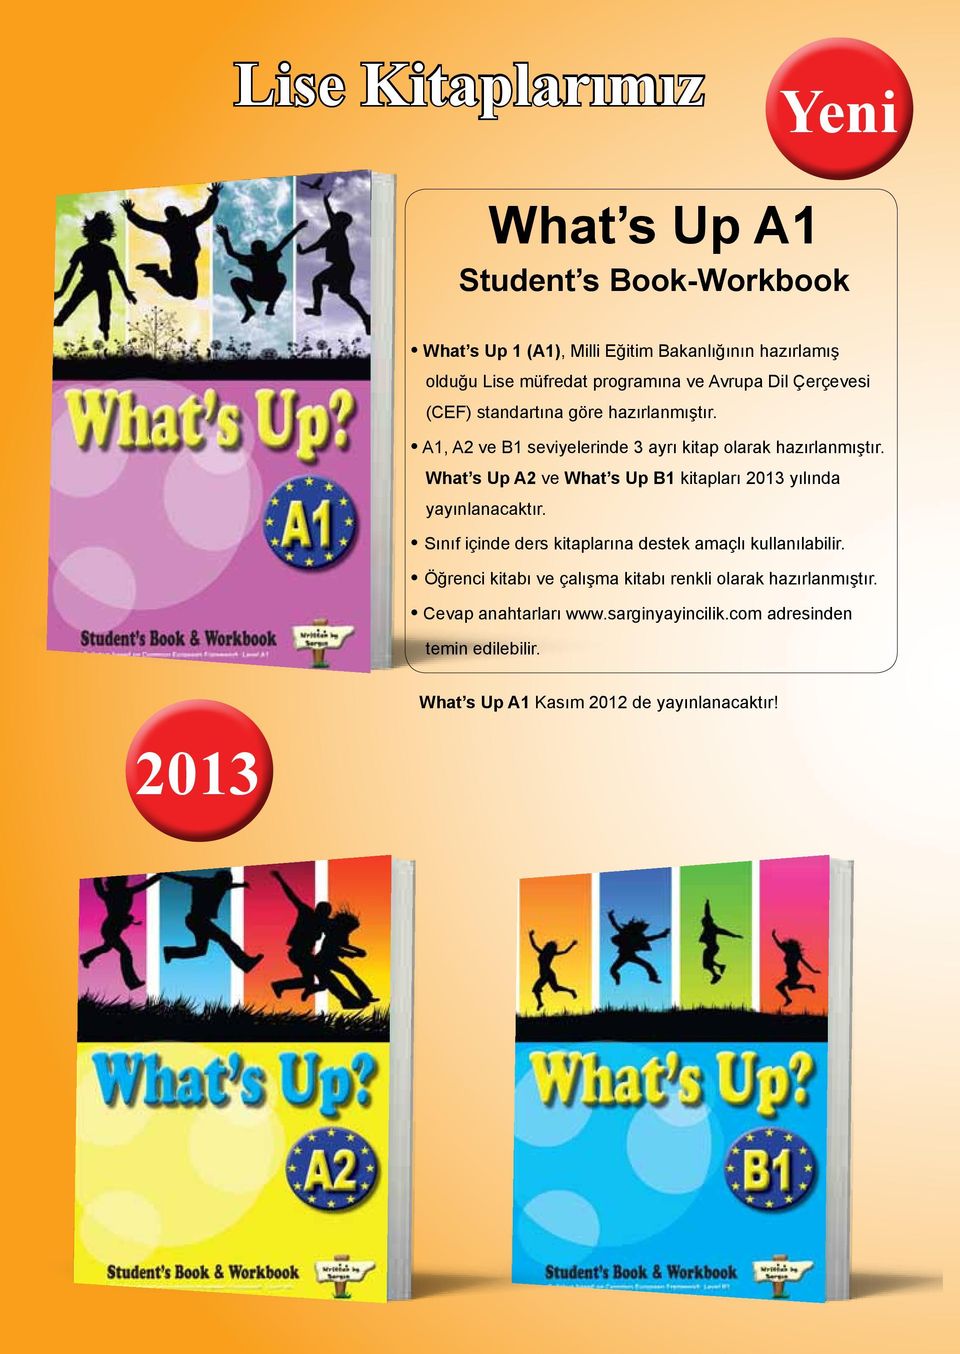 s Up B1 kitapları 2013 yılında yayınlanacaktır. Sınıf içinde ders kitaplarına destek amaçlı kullanılabilir.